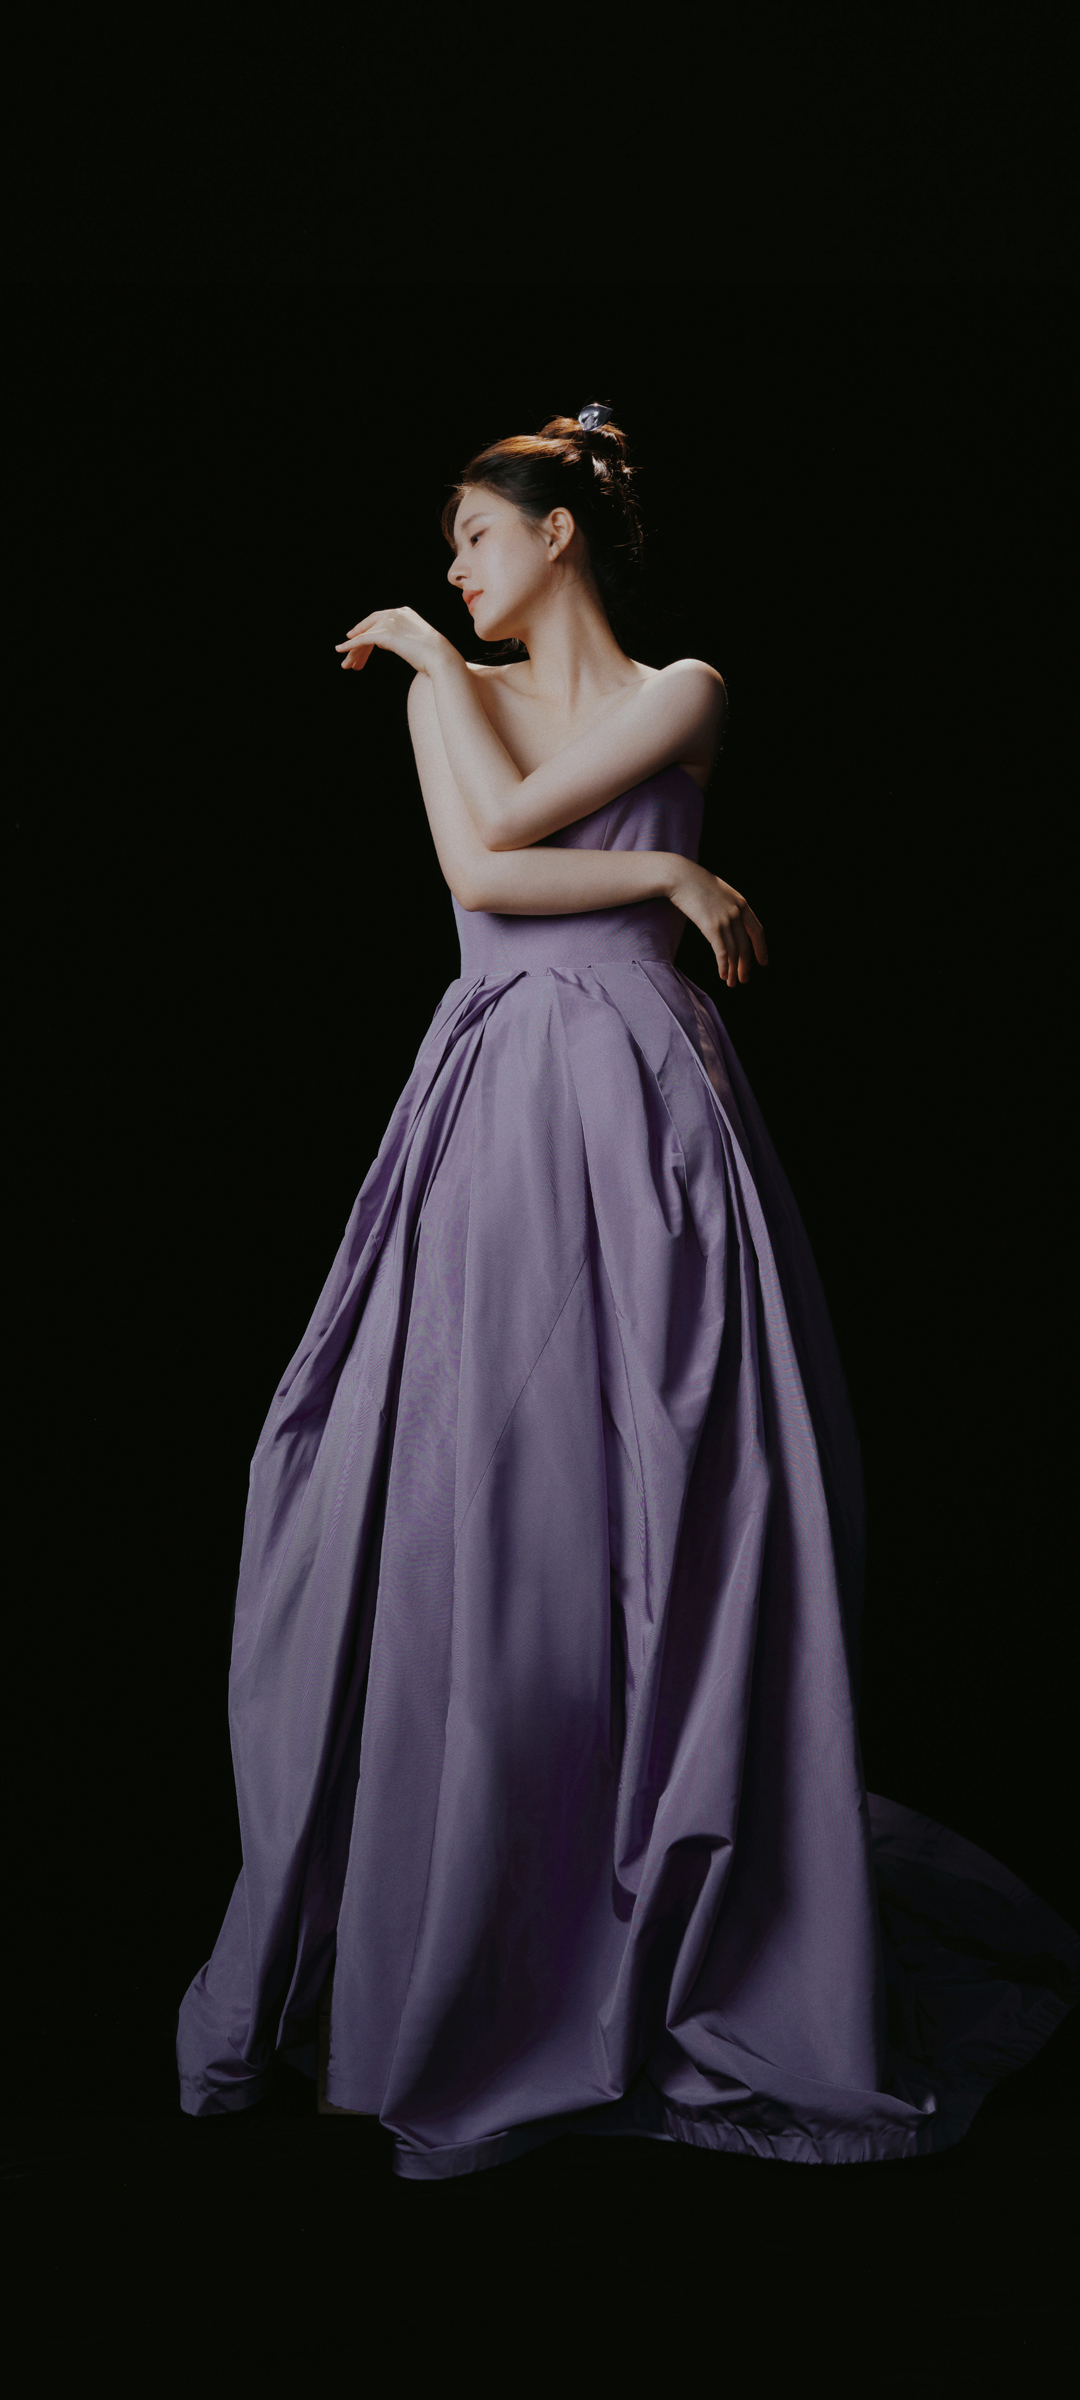 赵露思 紫色裙子 黑色背景 高清 手机 壁纸